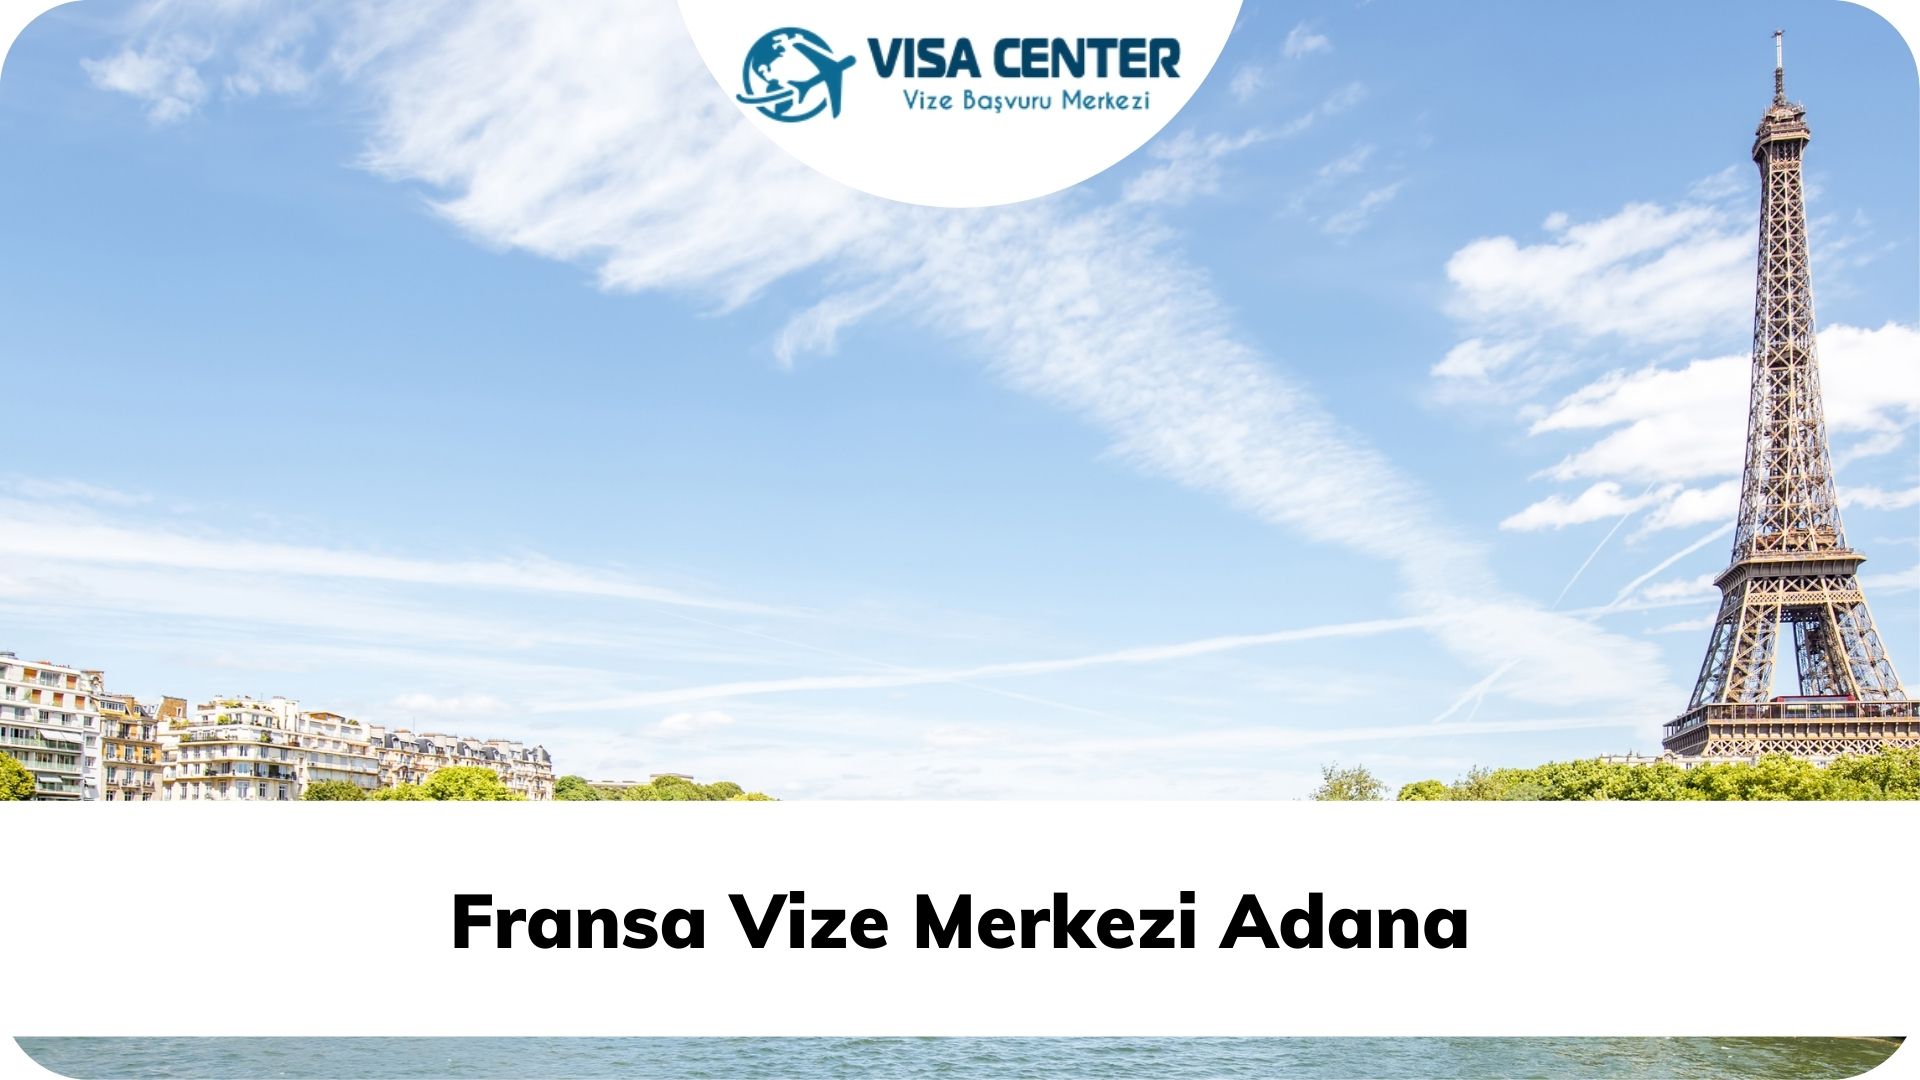 Fransa Vize Merkezi Adana